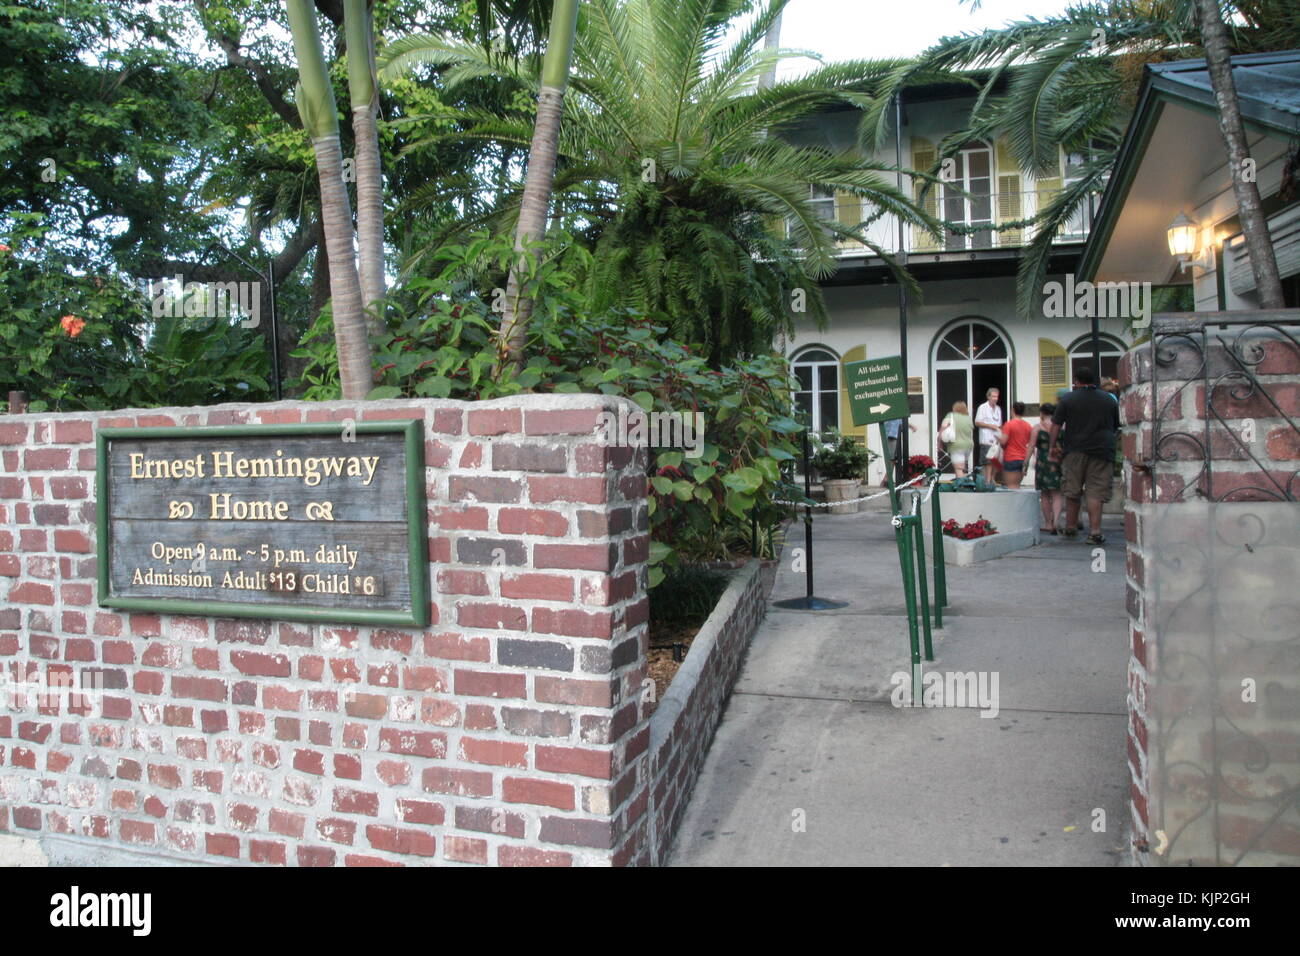 Ernest Hemingway House Entrance In Key West Florida Stock Photo Alamy